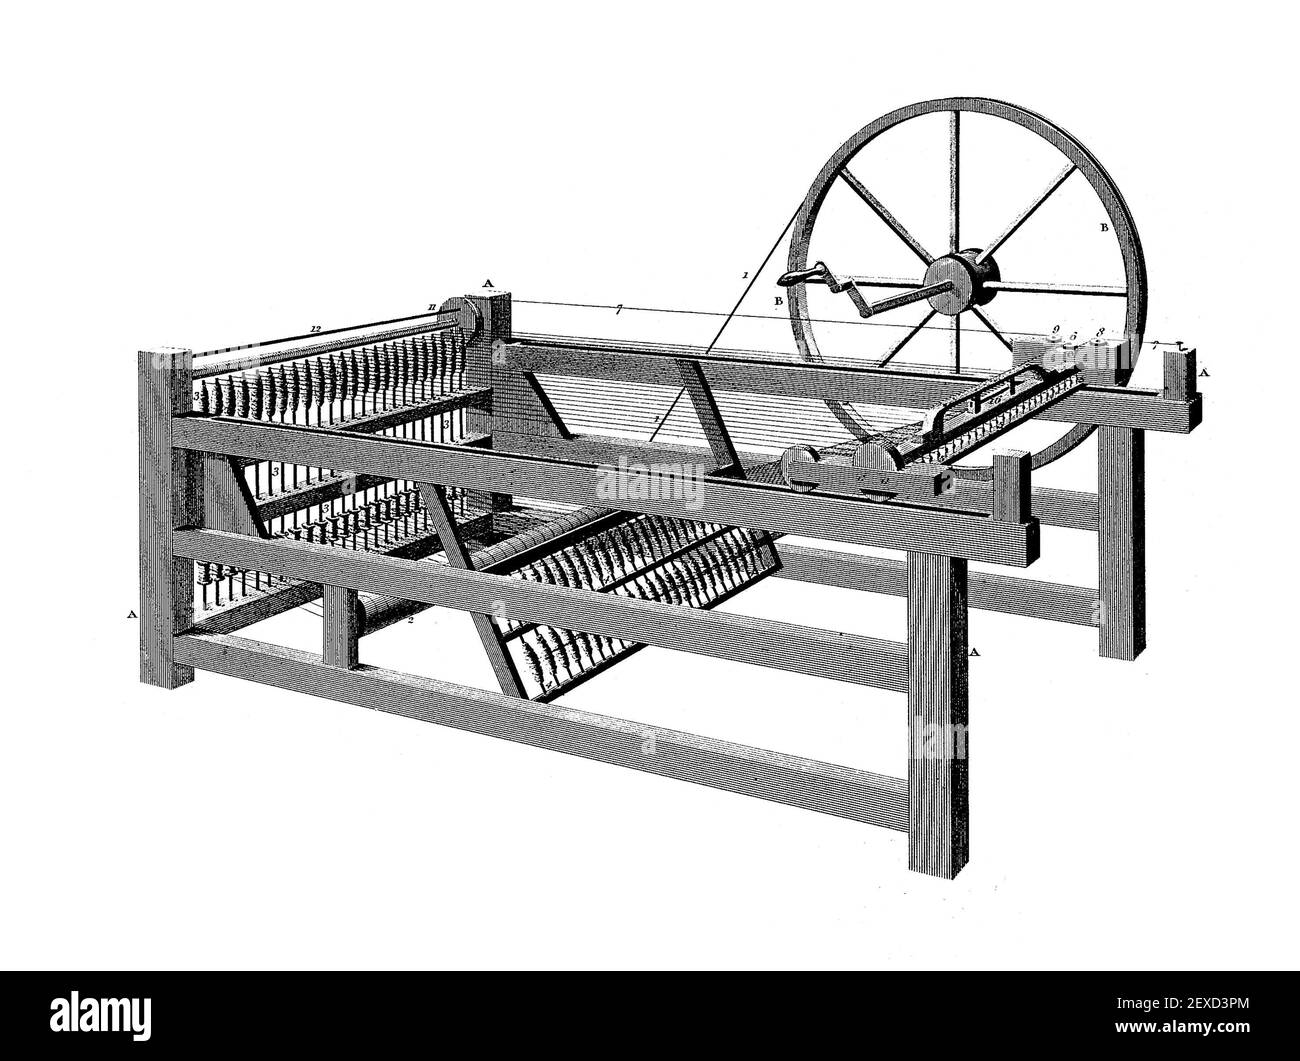 Spinning Jenny, incisione, 1811. La jenny filante era una struttura di filatura multi-mandrino, inventata nel 1764 o 1765 da James Hargreaves in Lancashire, Inghilterra. Foto Stock